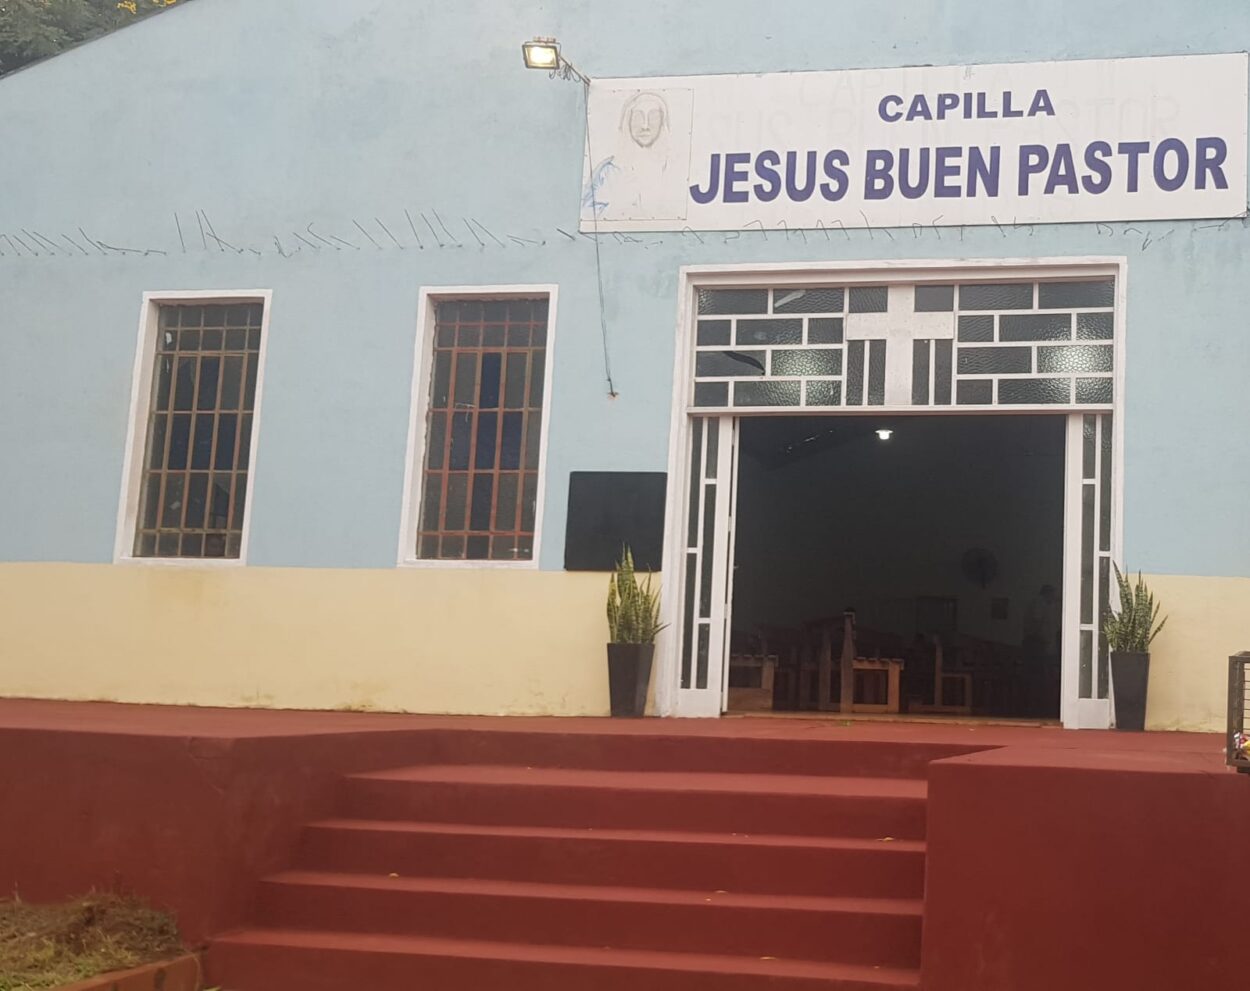 Capilla “Jesús Buen Pastor” celebrará su fiesta patronal este domingo 21 imagen-12